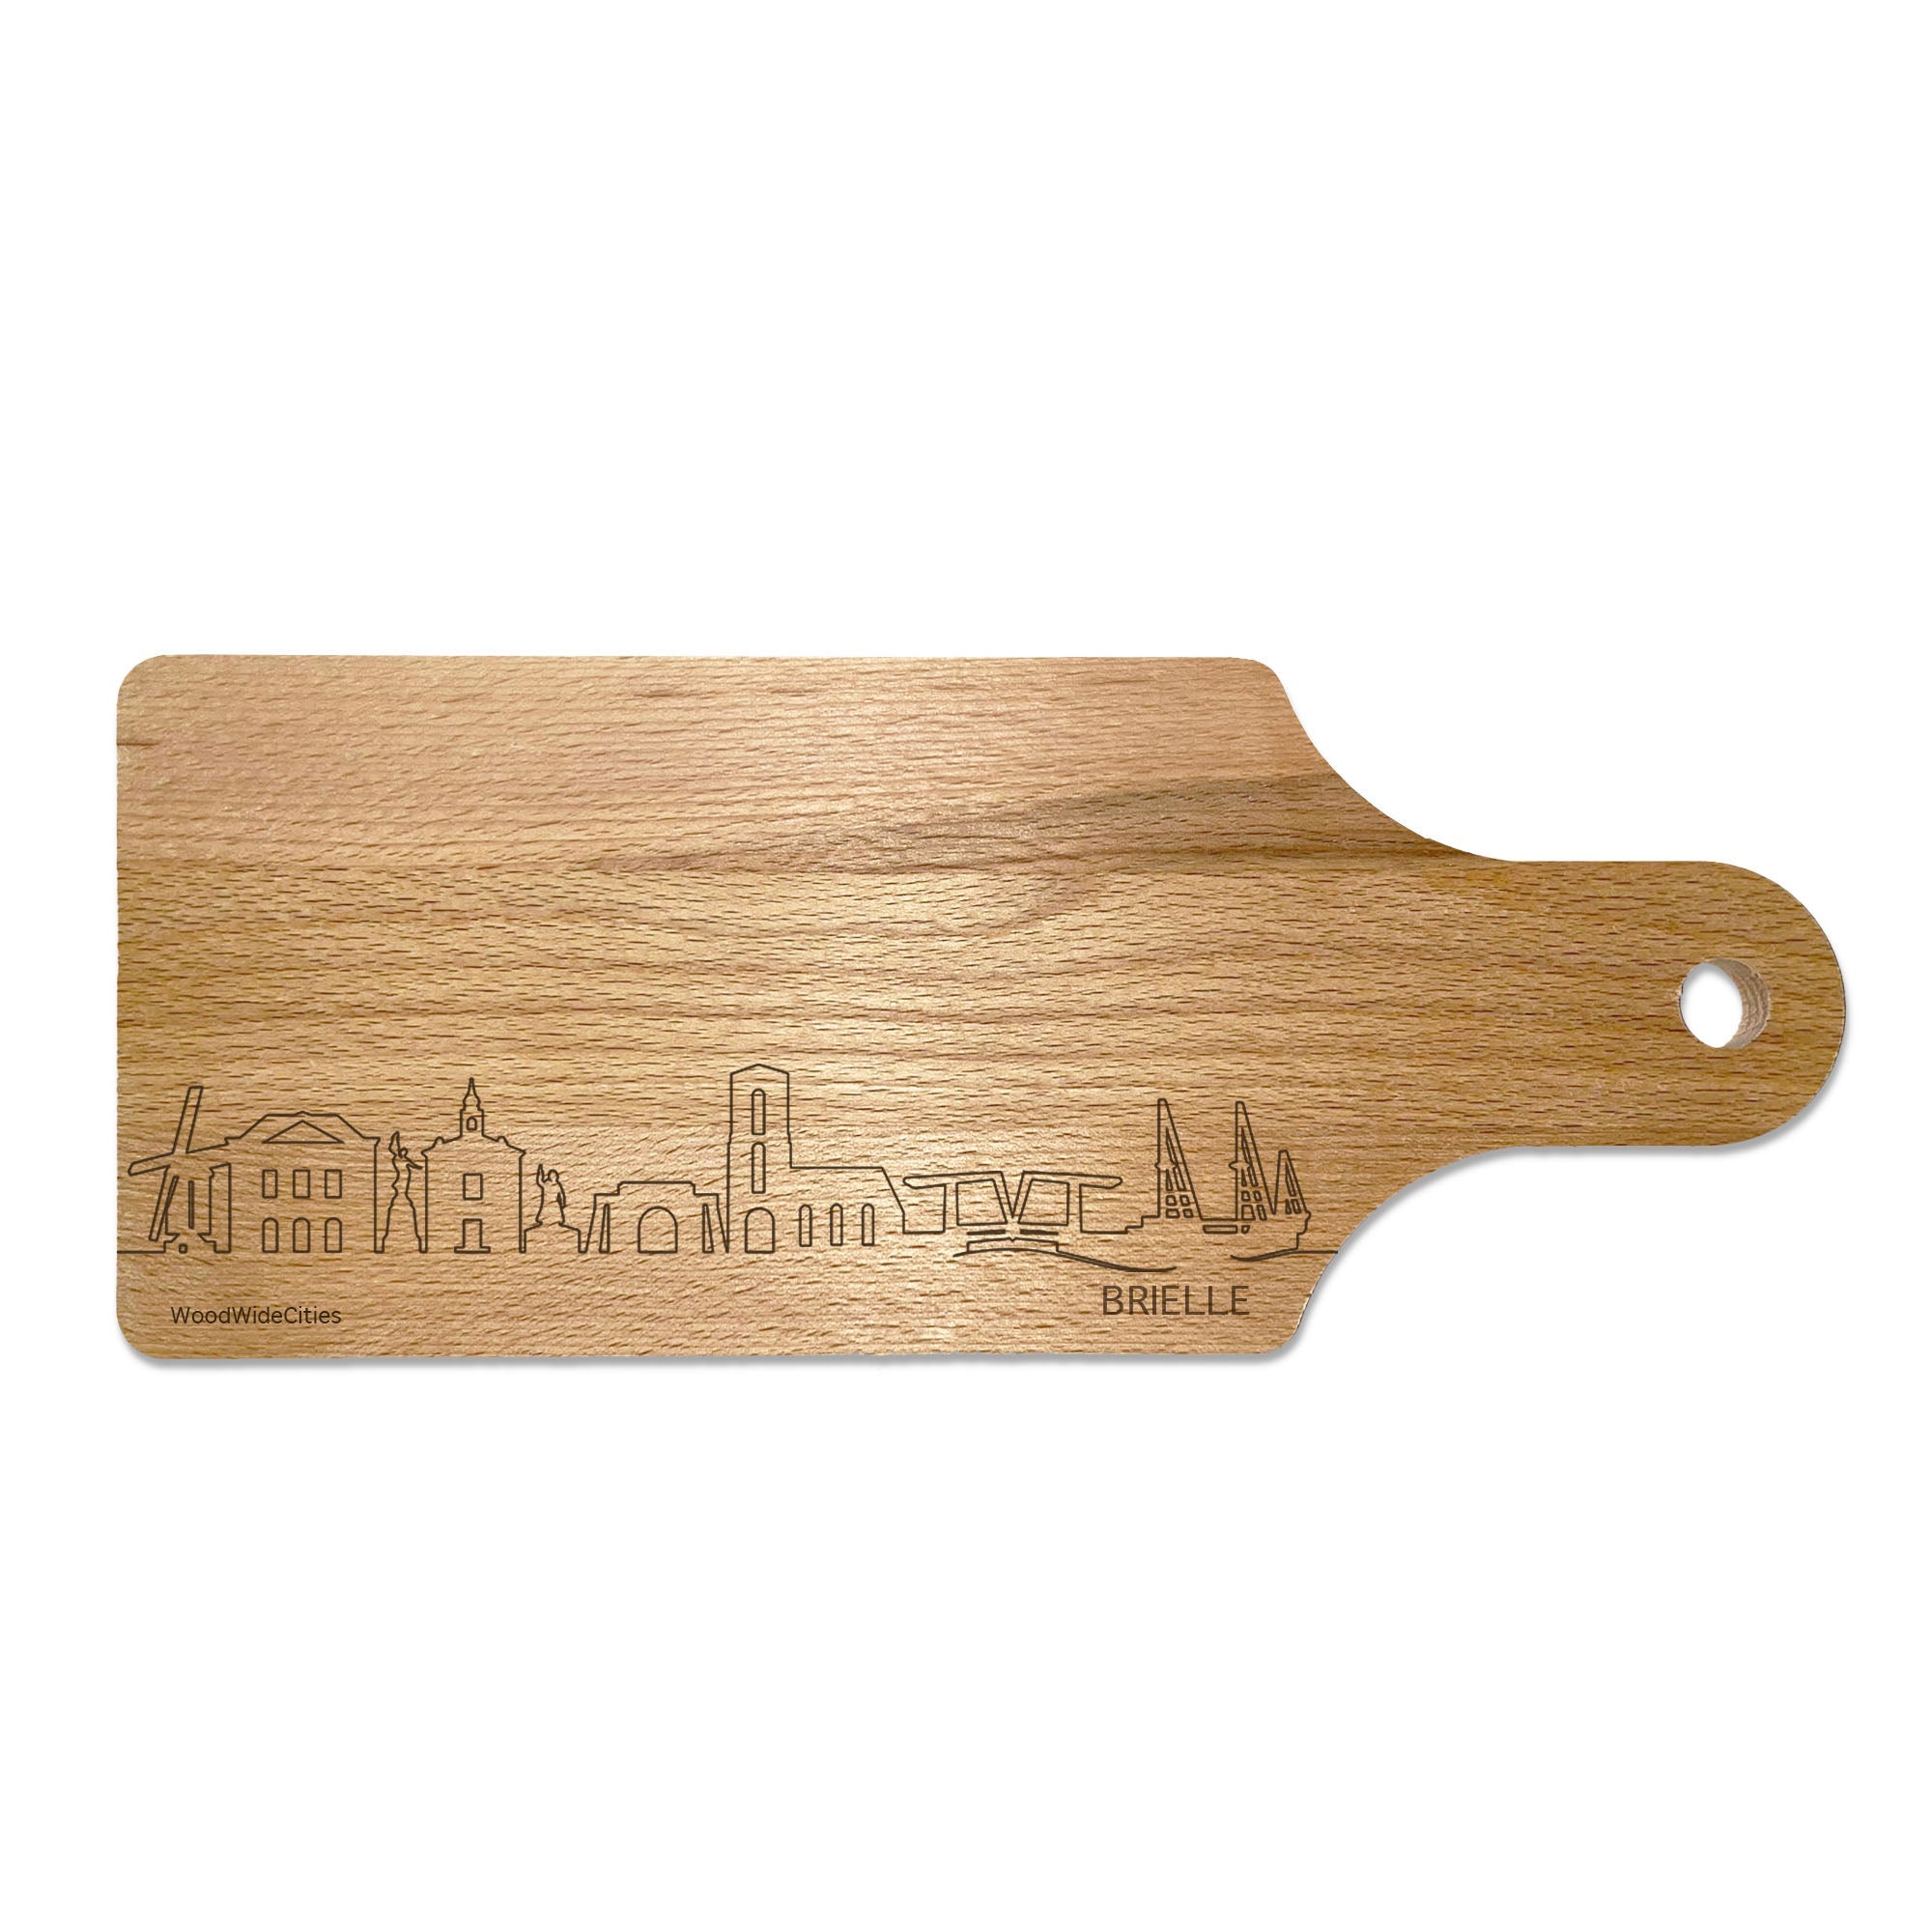 Skyline Borrelplank Brielle houten cadeau decoratie relatiegeschenk van WoodWideCities